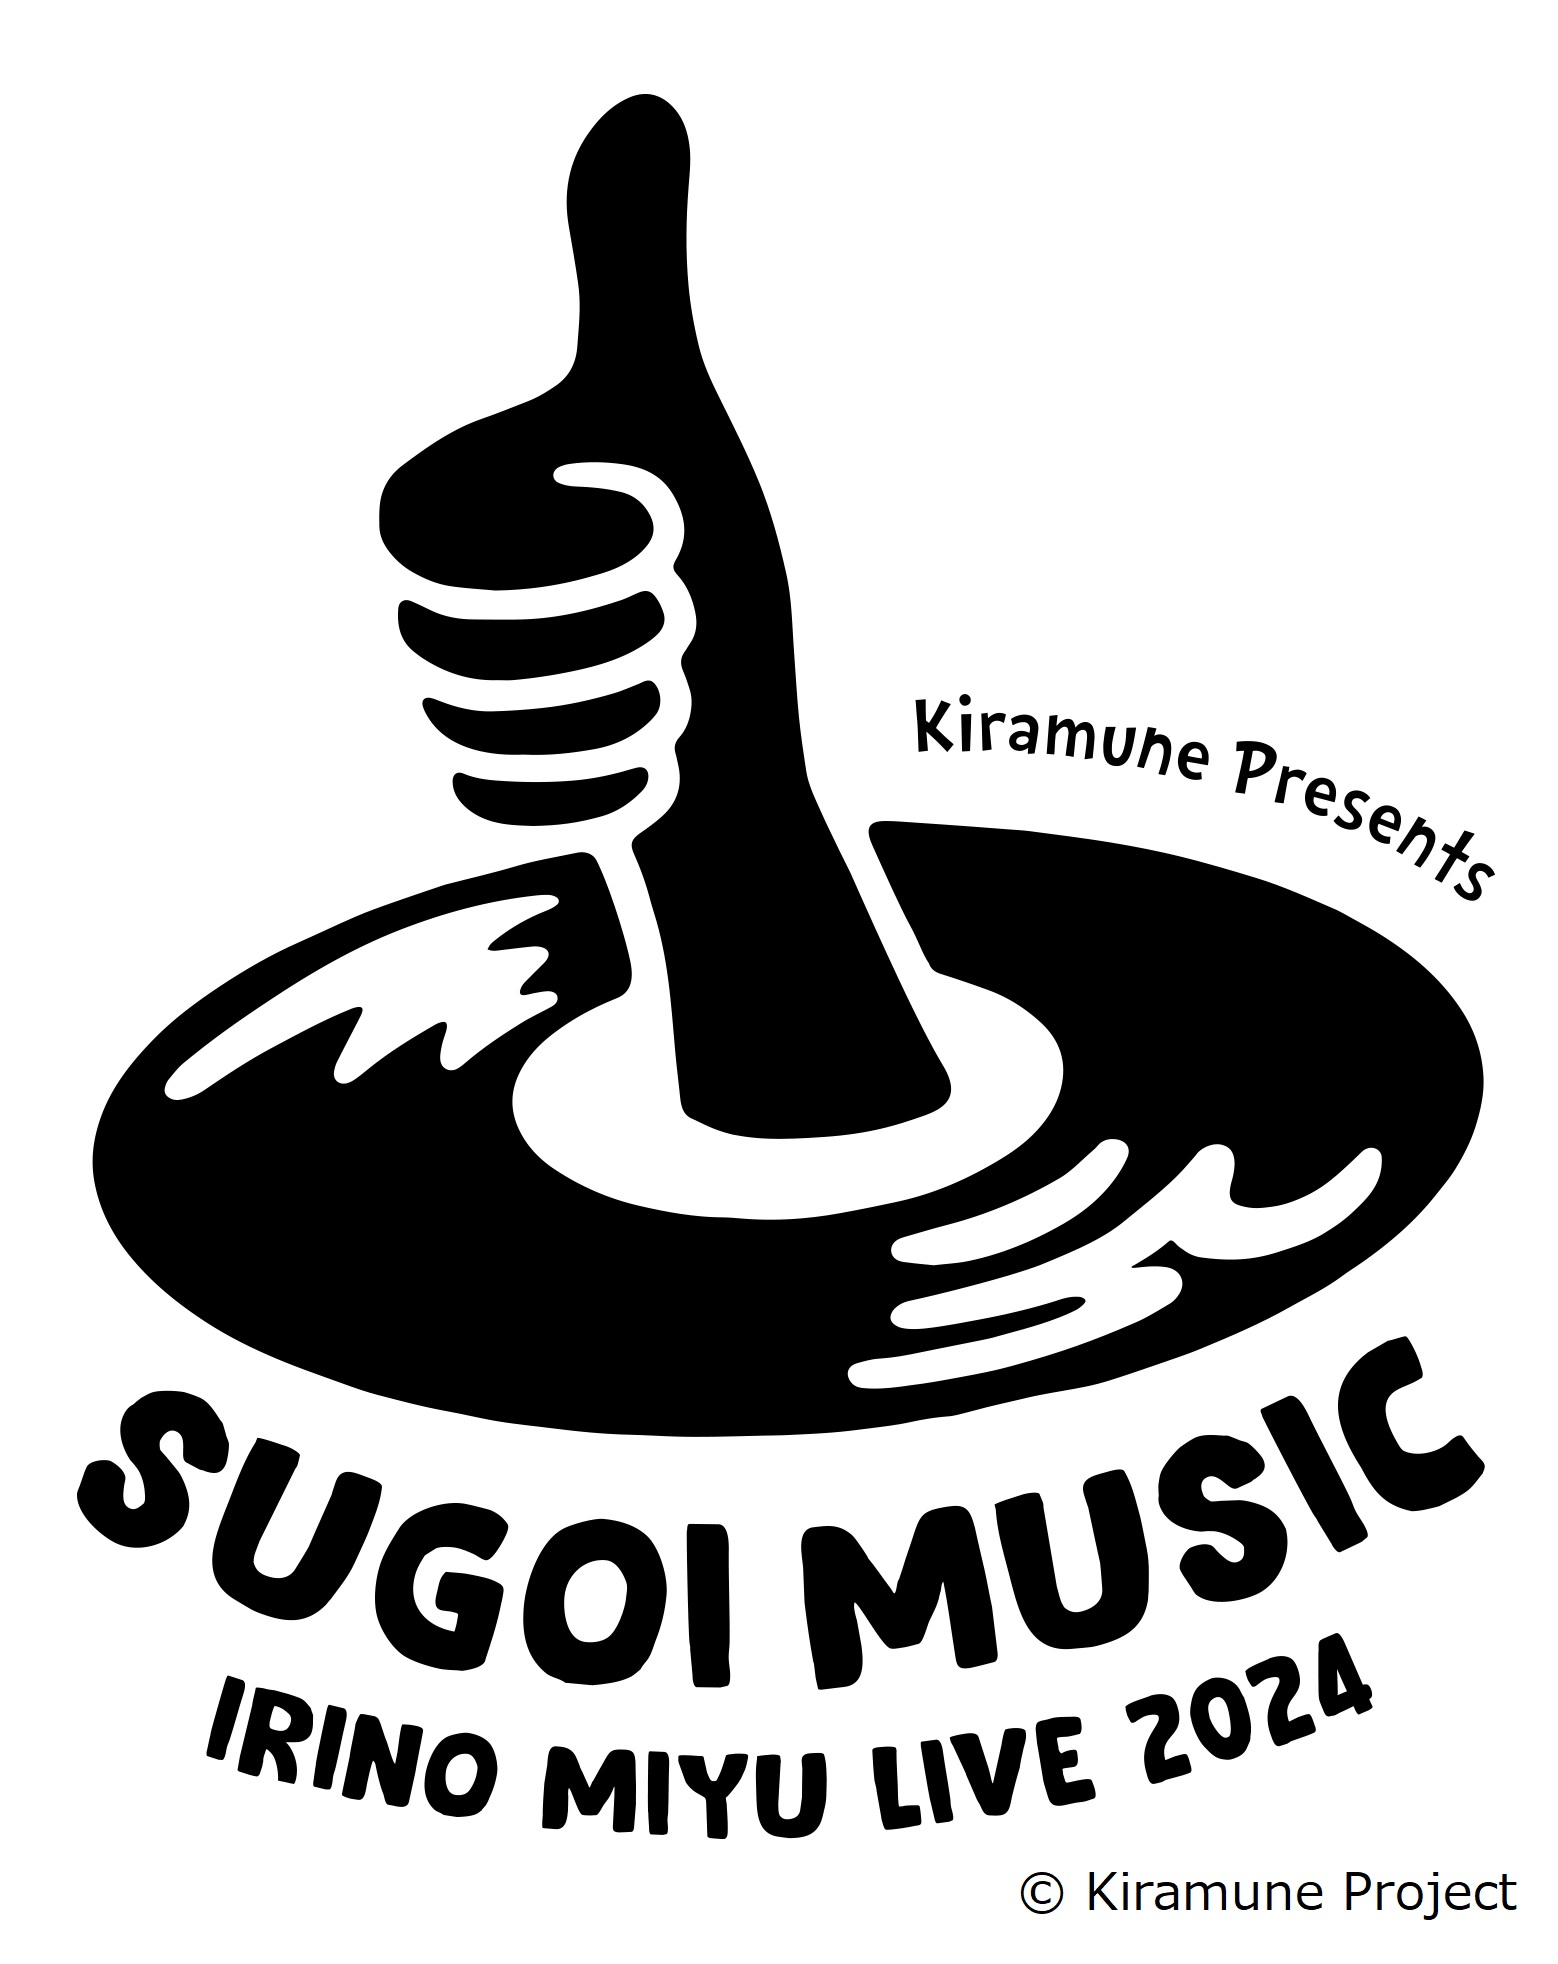 Kiramune Presents IRINO MIYU LIVE 2024 “SUGOI MUSIC”